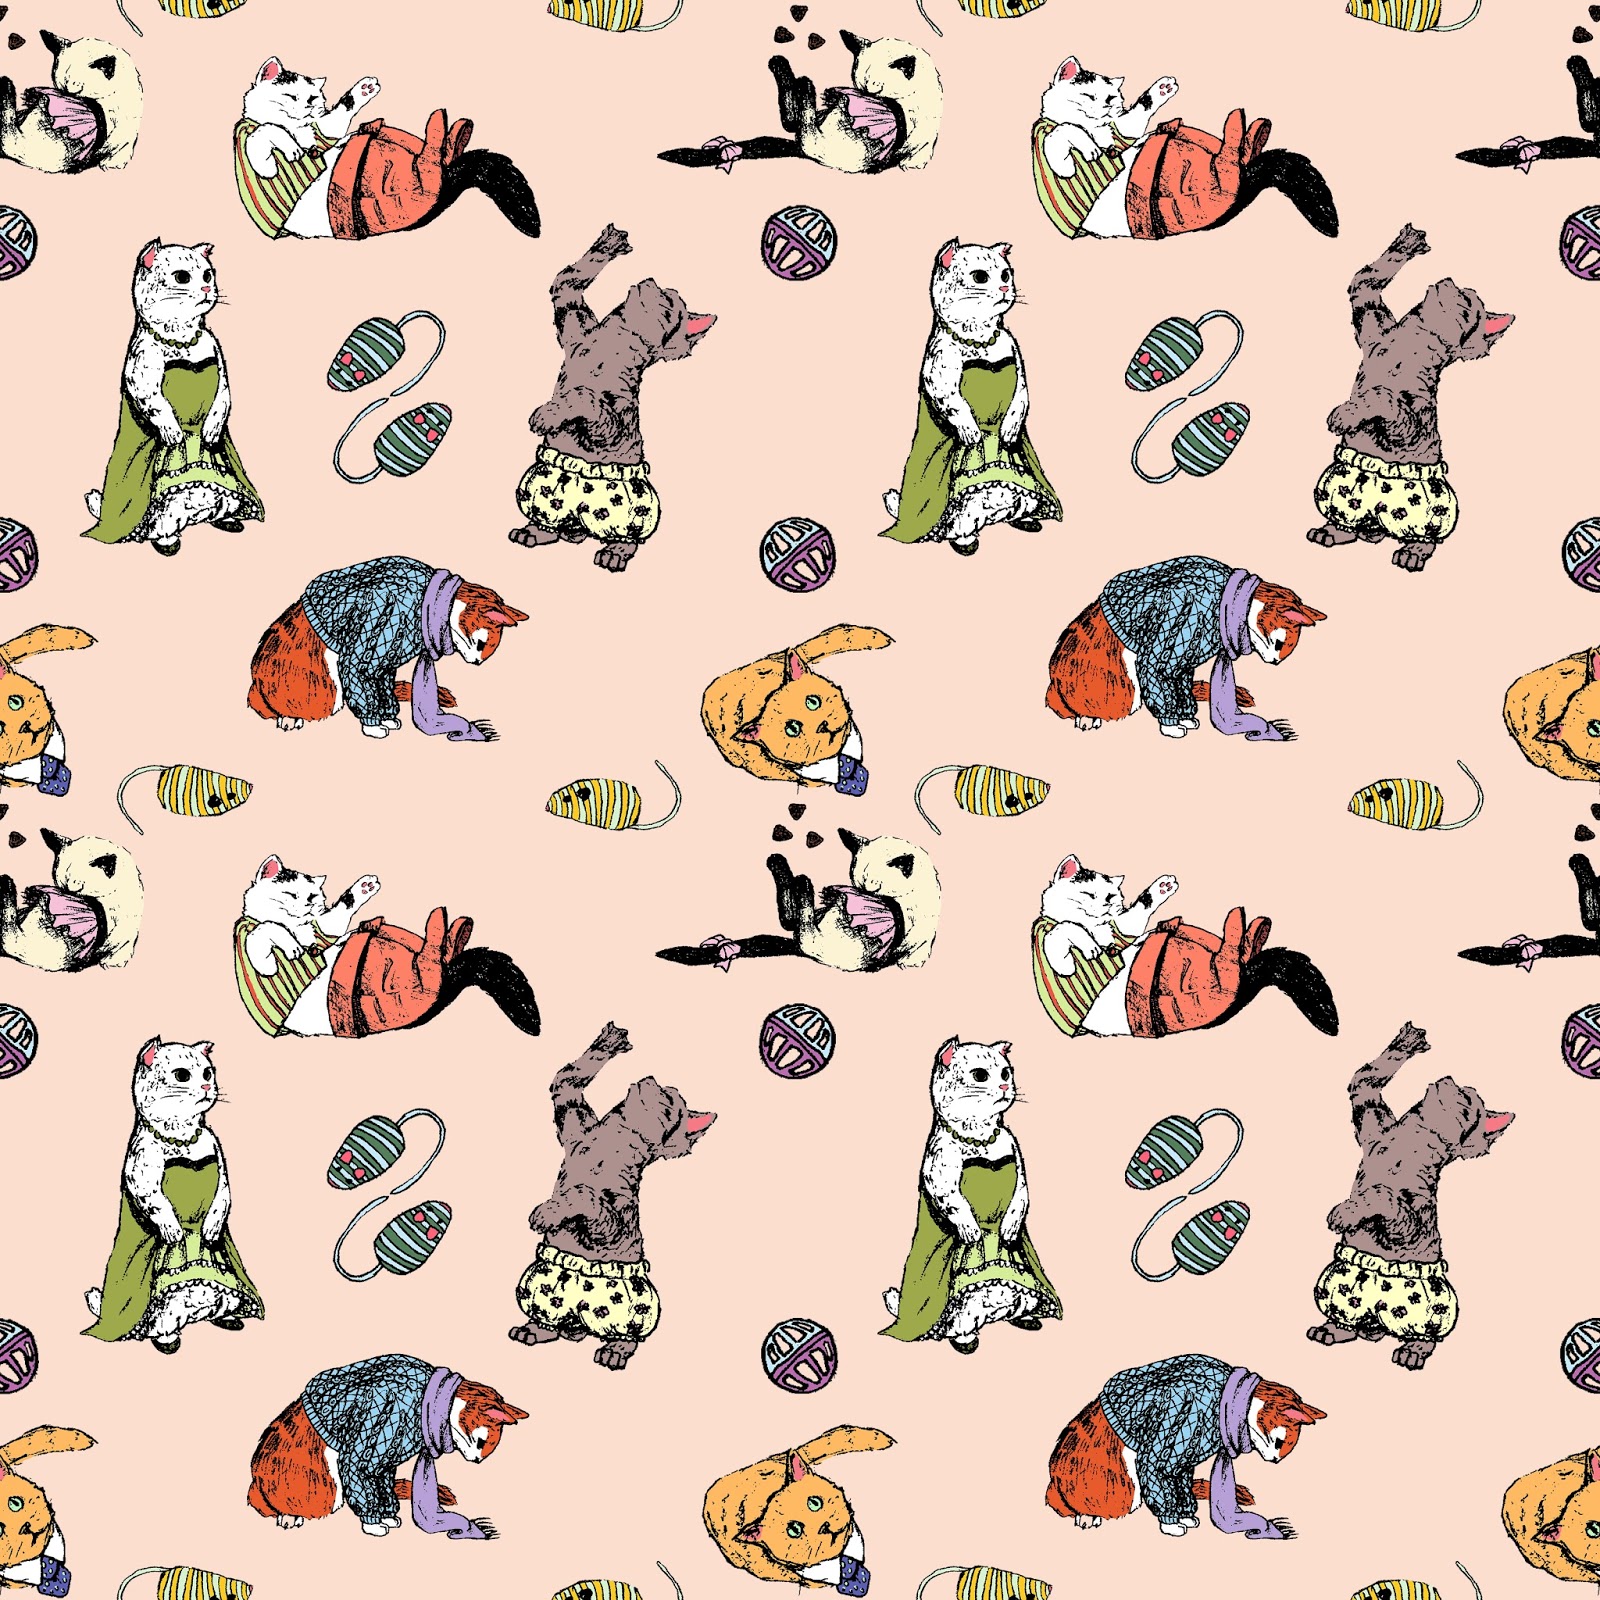 [48+] Cat Drawings Wallpaper on WallpaperSafari